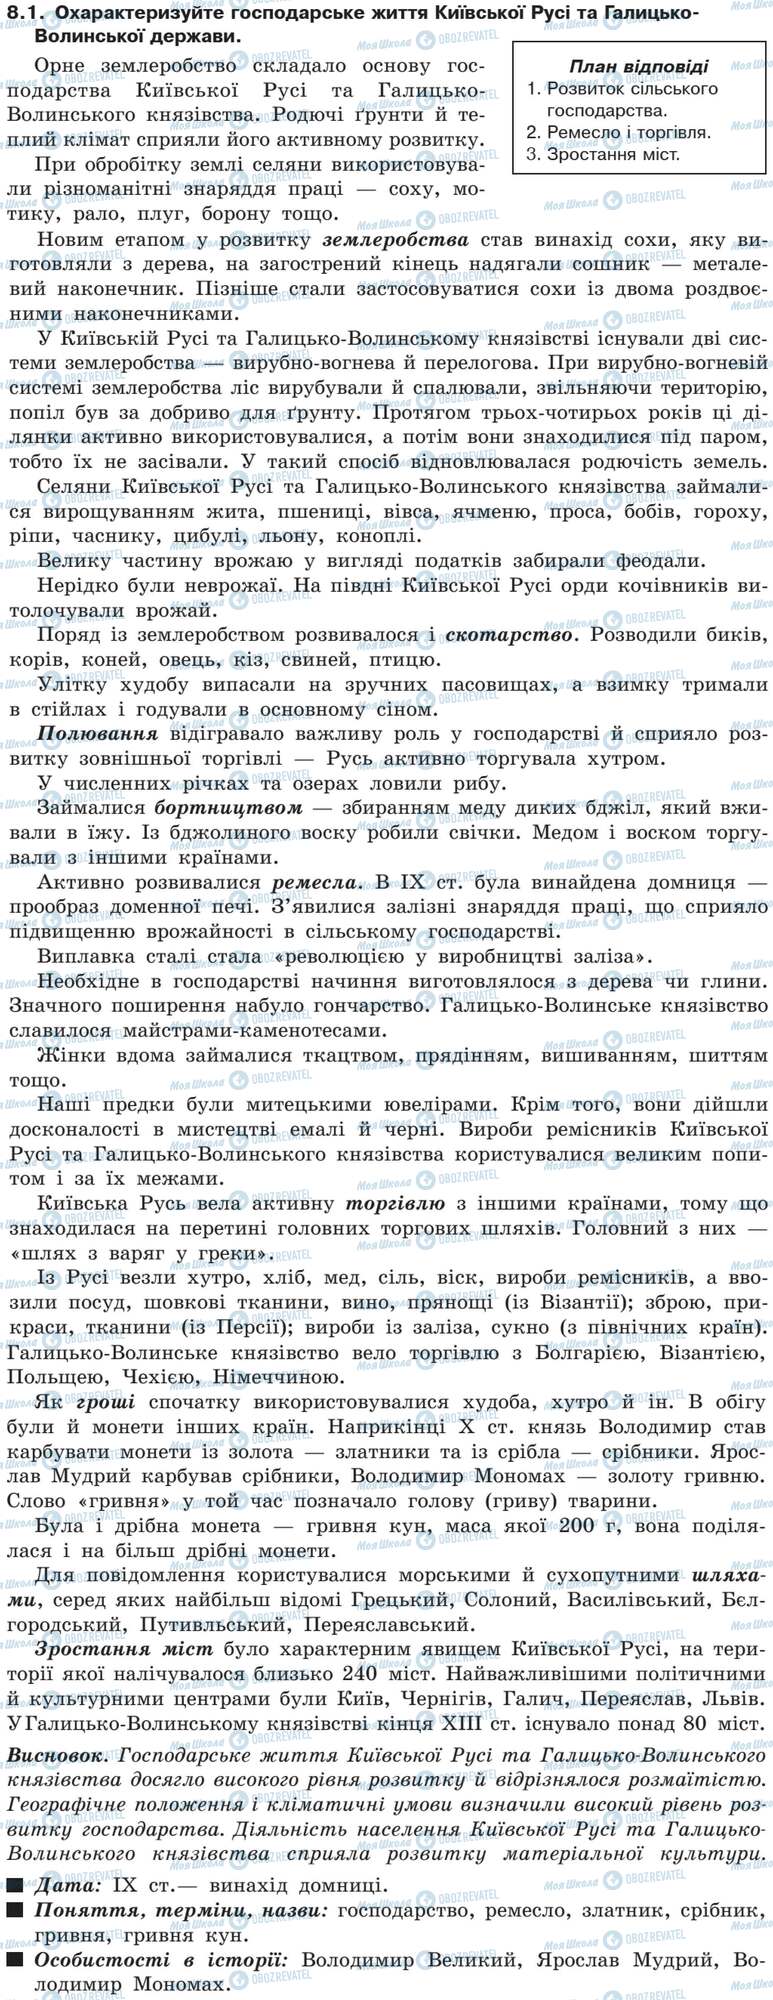 ДПА История Украины 9 класс страница 8.1